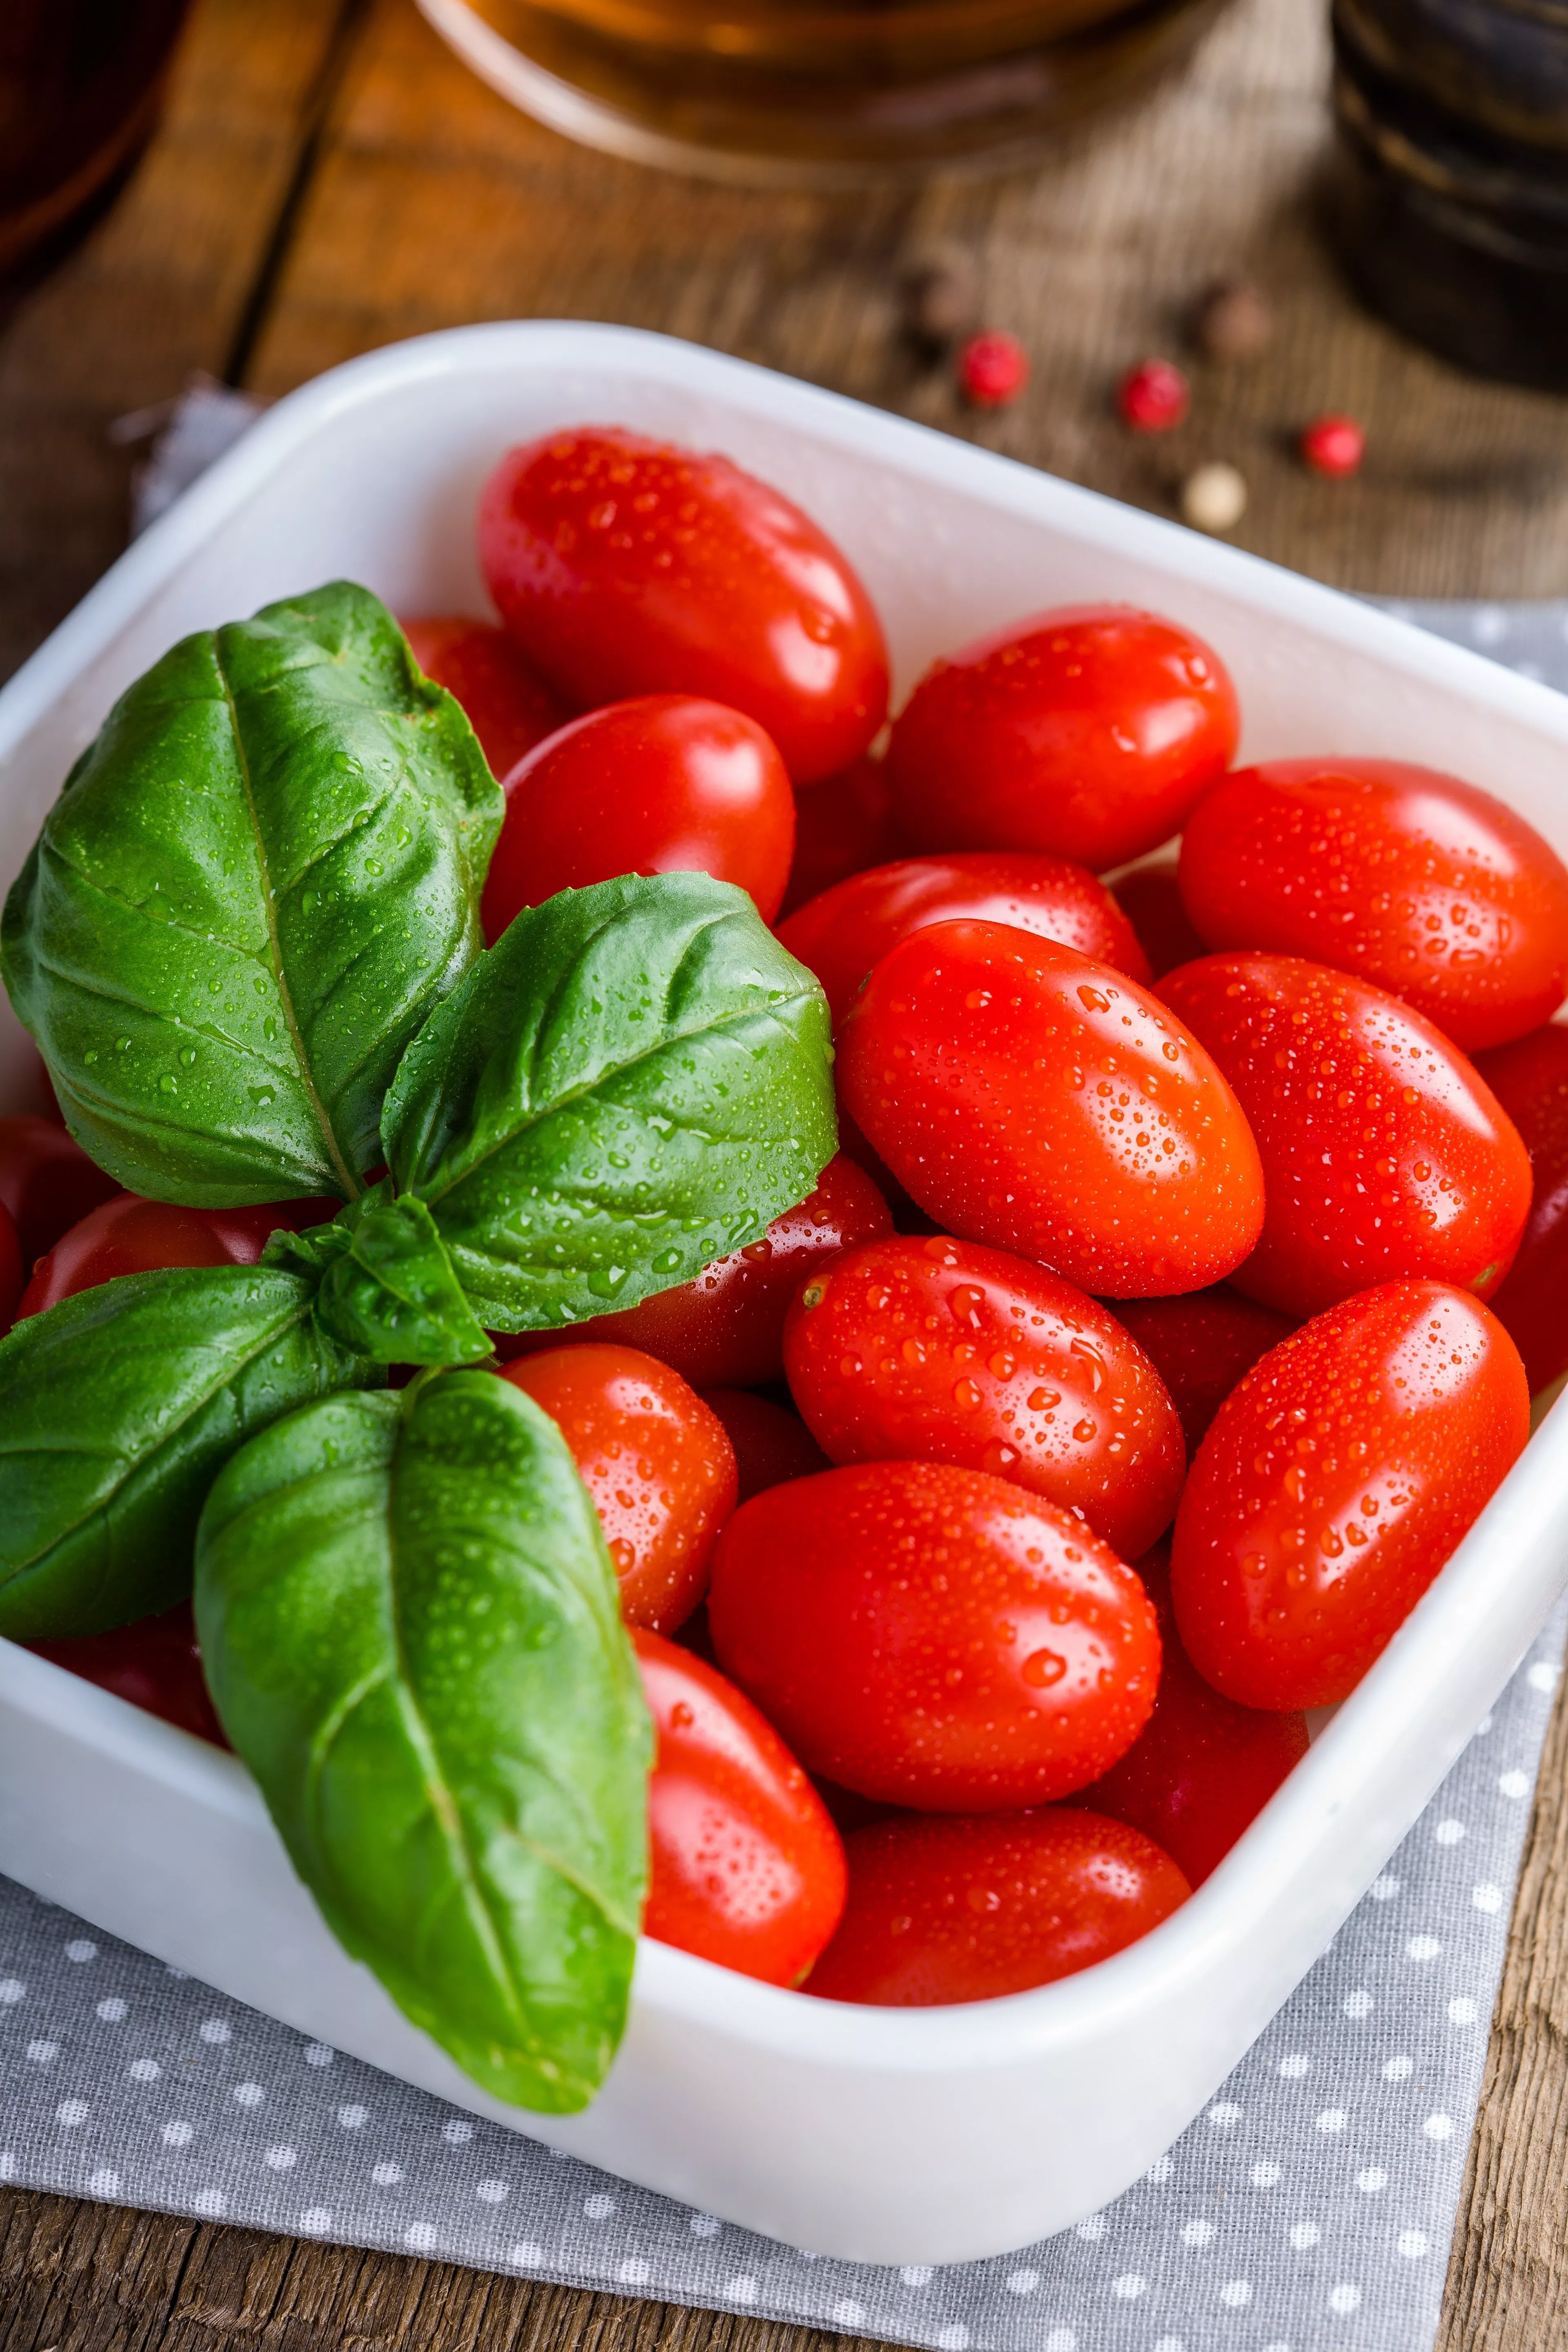 Диетологи не рекомендуют хранить помидоры в холодильнике